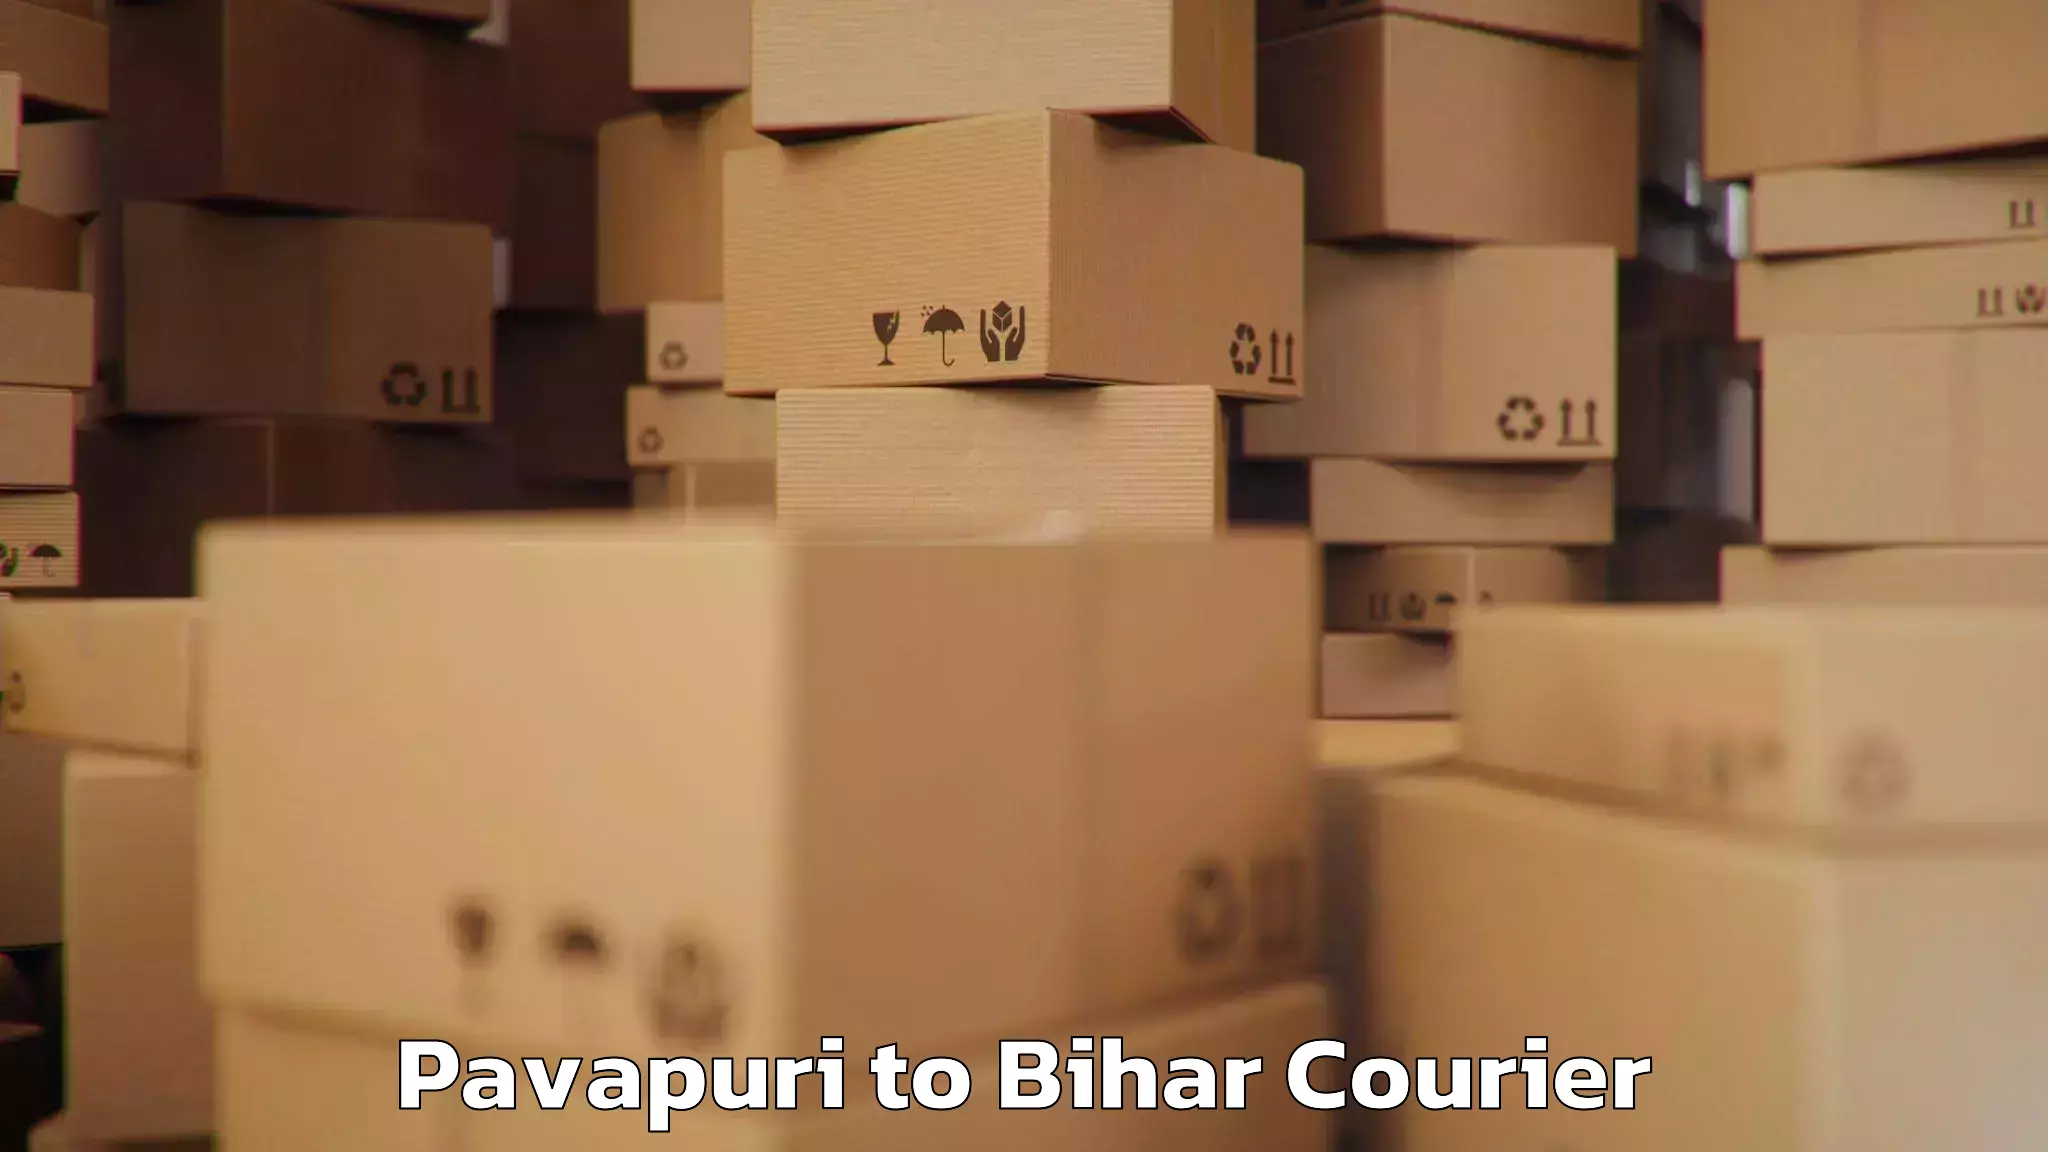 Luggage shipping planner Pavapuri to Narkatiaganj